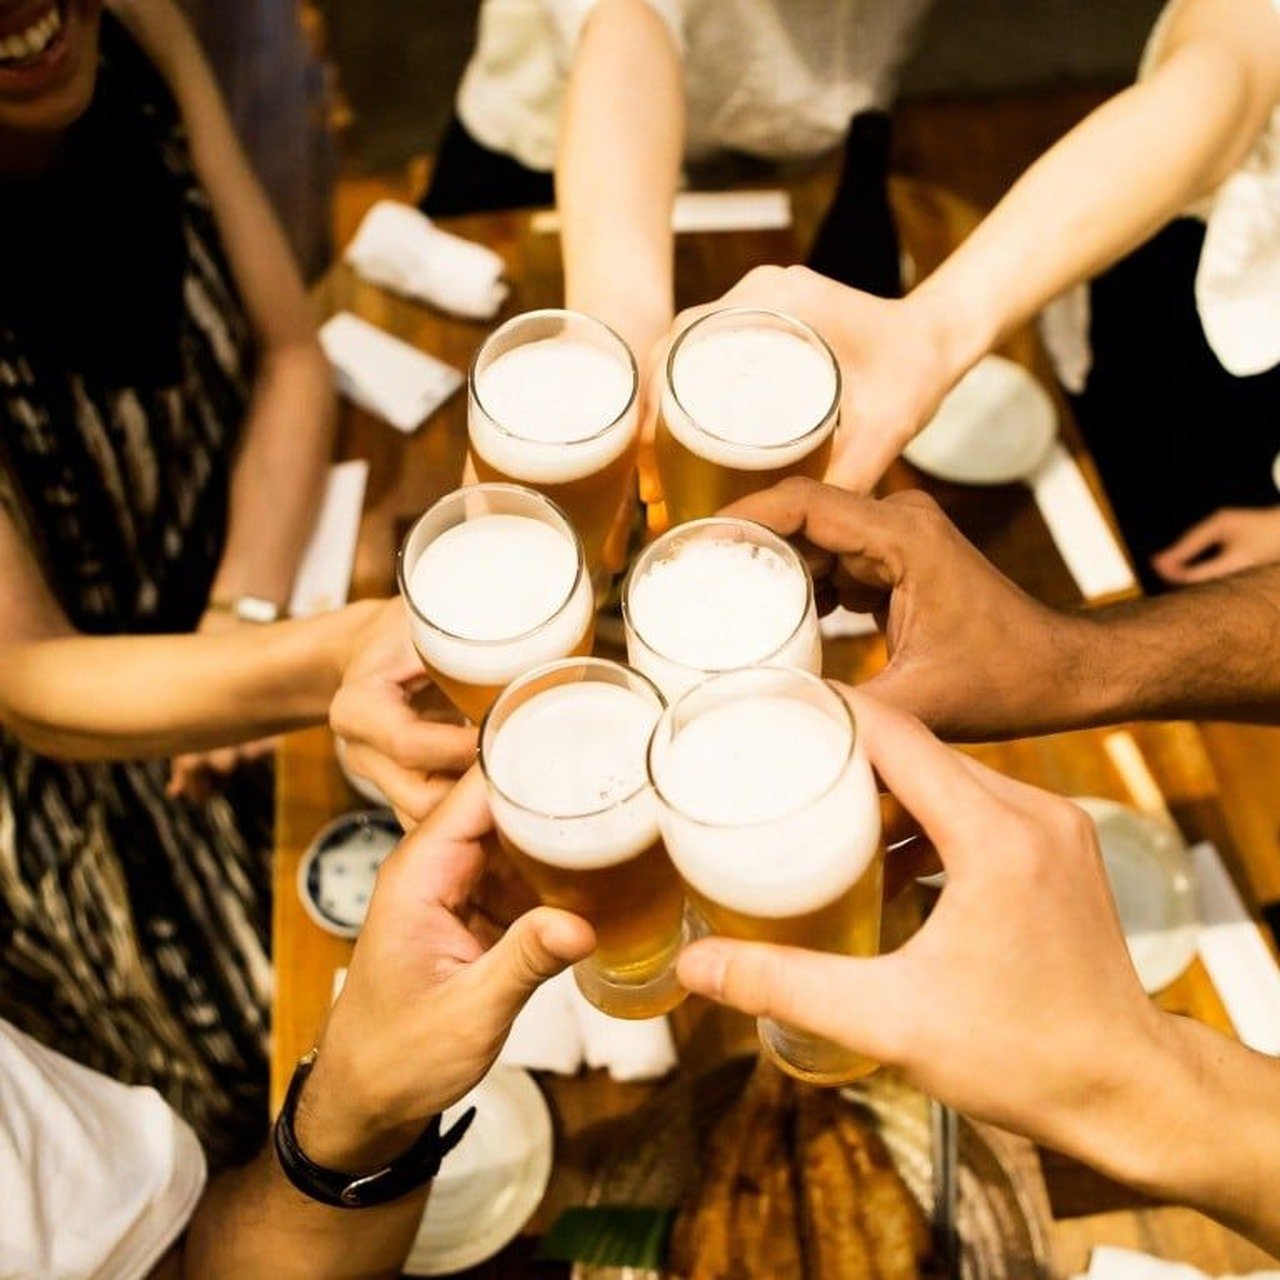 Nutricionistas indicam bebidas saudáveis contra a ressaca por excesso de álcool no fim de ano